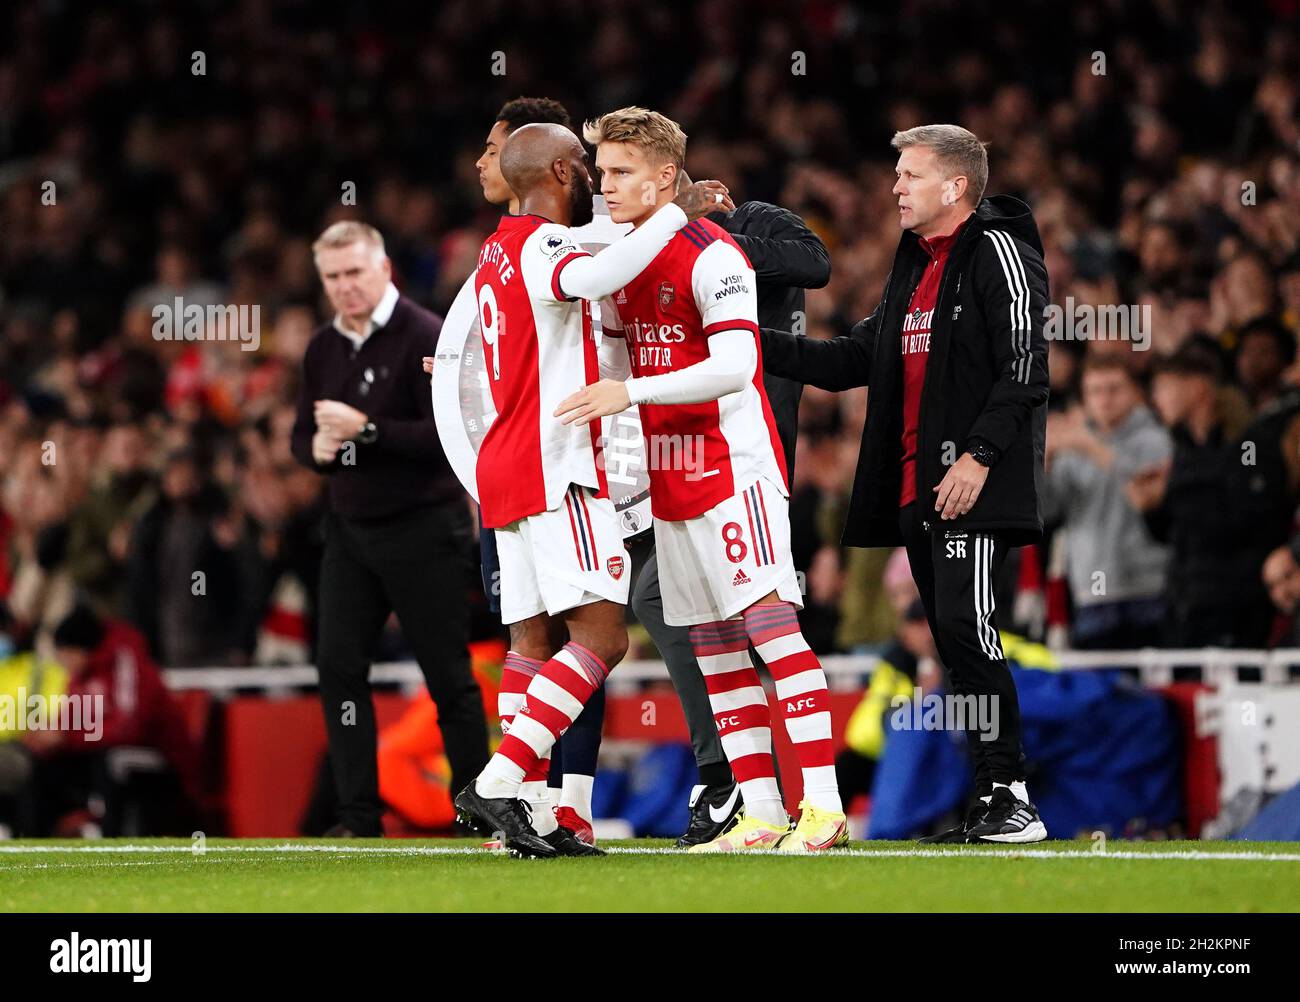 Alexandre Lacazette dell'Arsenal (a sinistra) è sostituito dal compagno di squadra Martin Odegaard durante la partita della Premier League all'Emirates Stadium di Londra. Data foto: Venerdì 22 ottobre 2021. Foto Stock